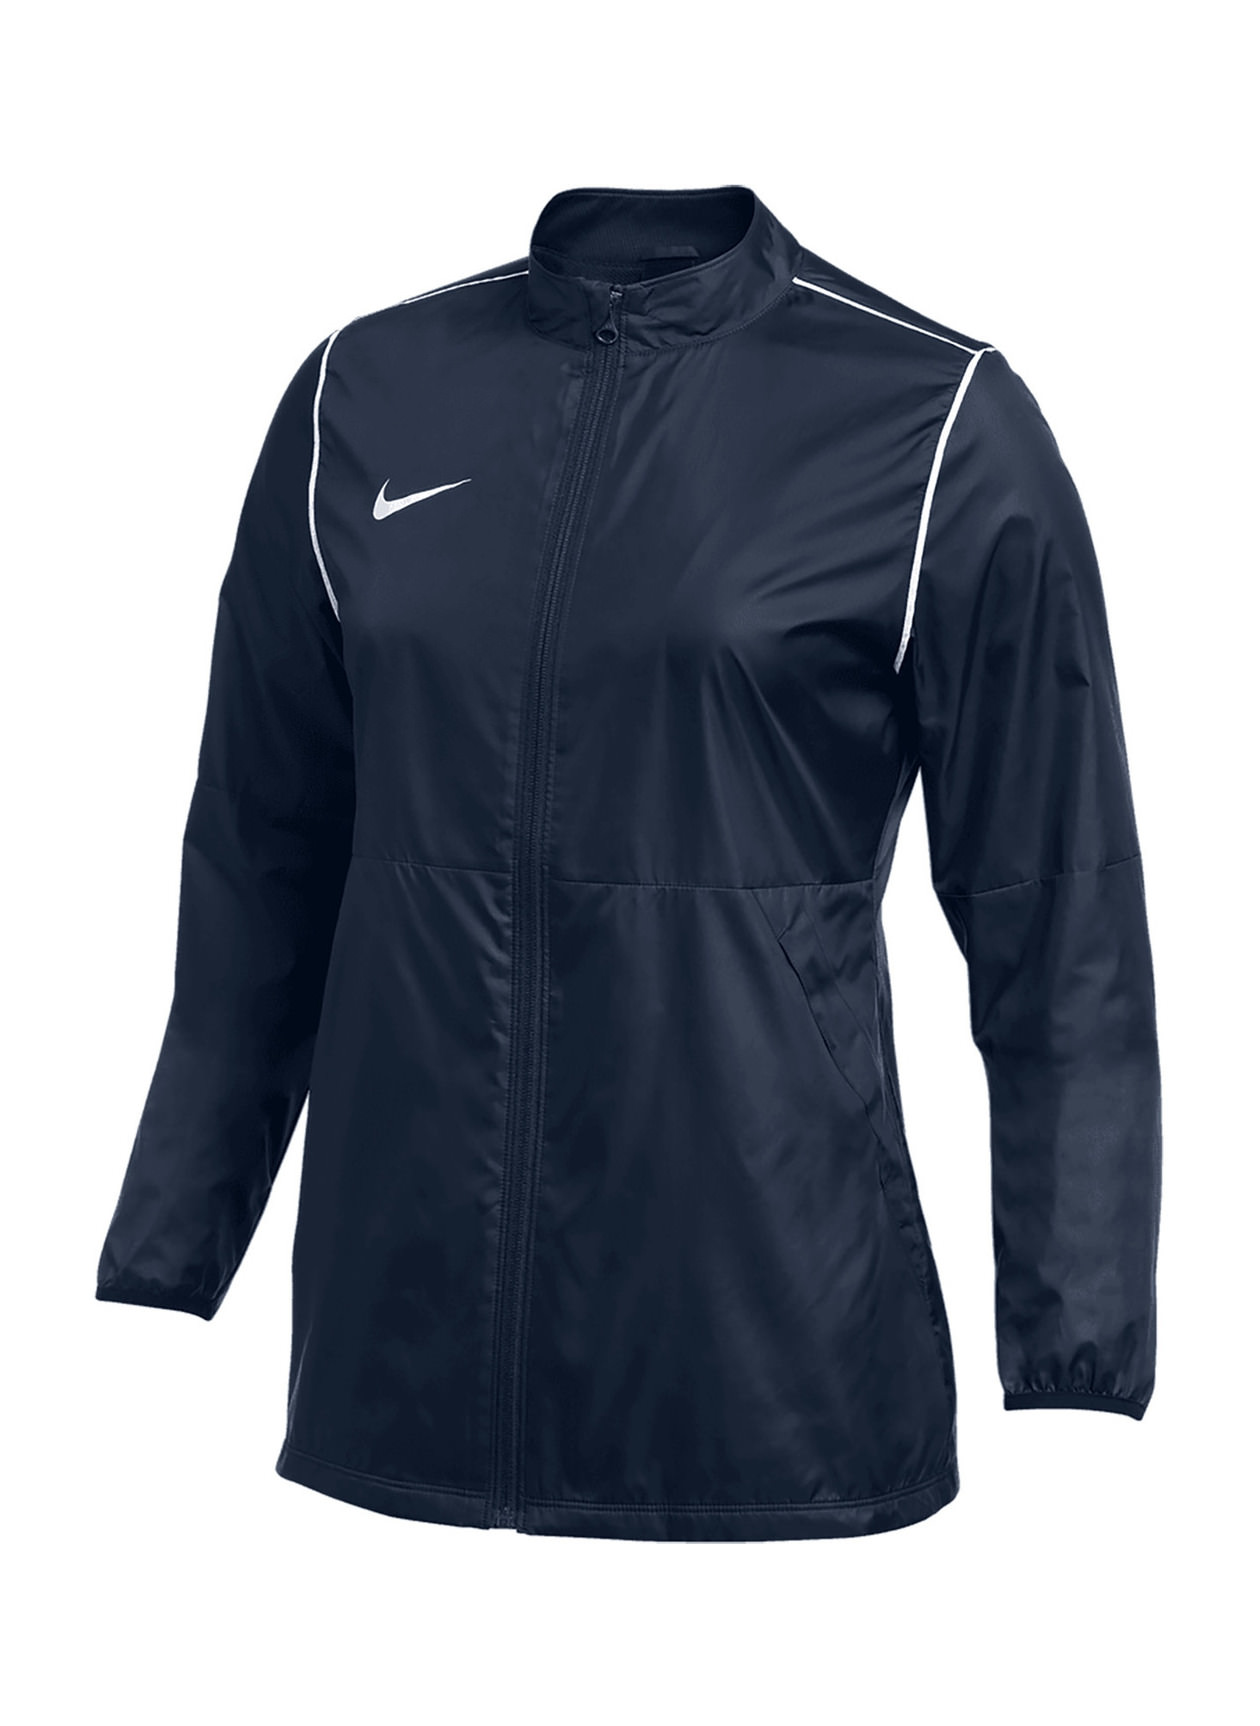 Nike Women's Obsidian Park20 Jacket